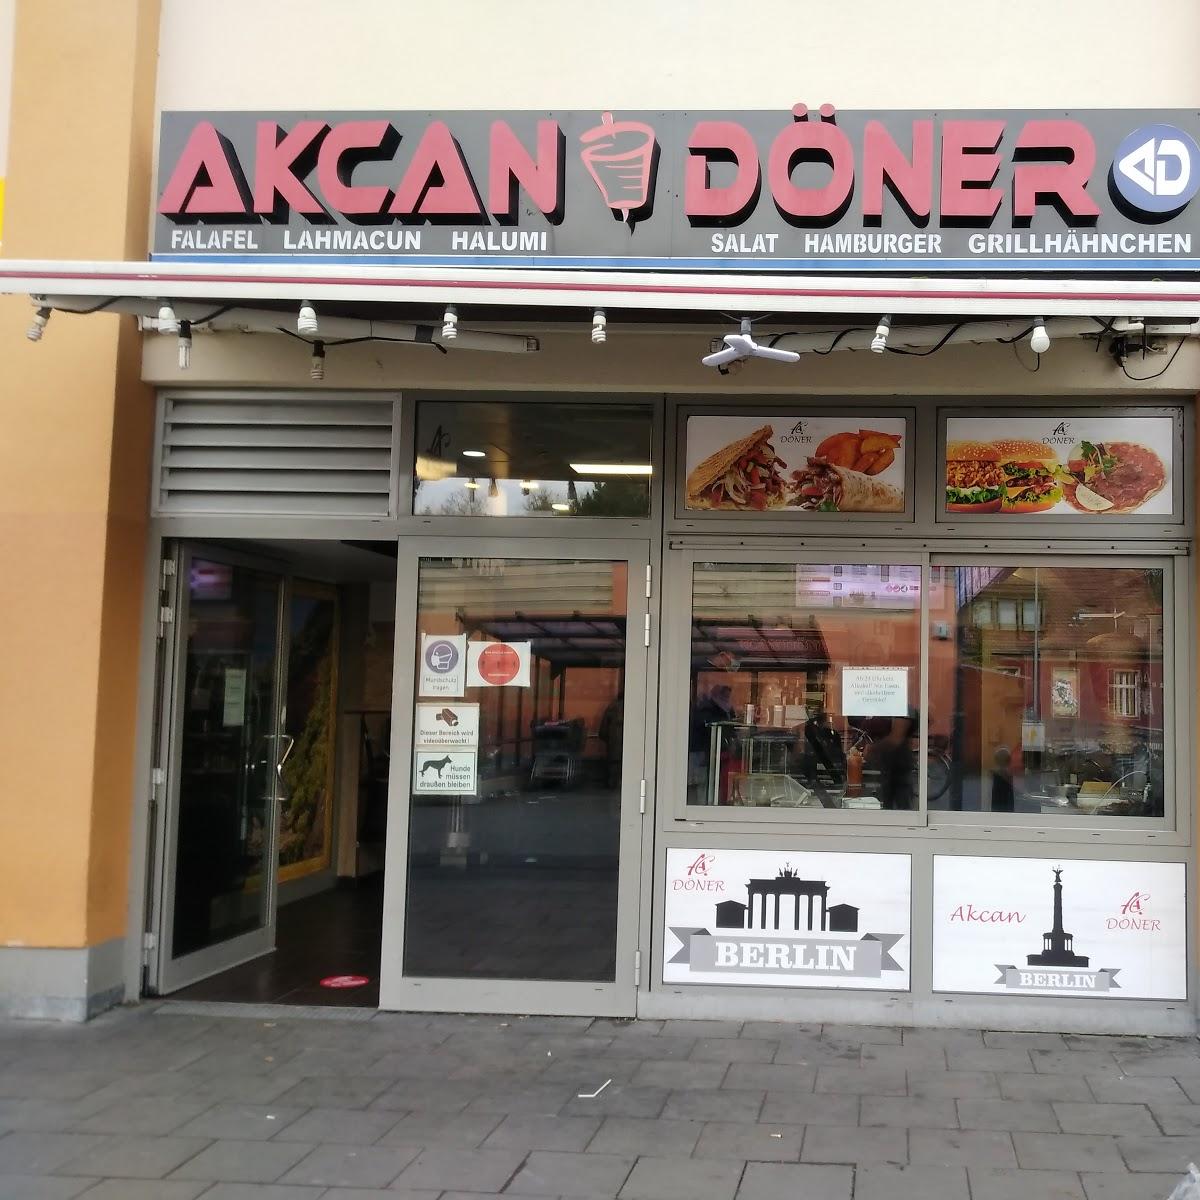 Restaurant "Akcan Döner" in Berlin